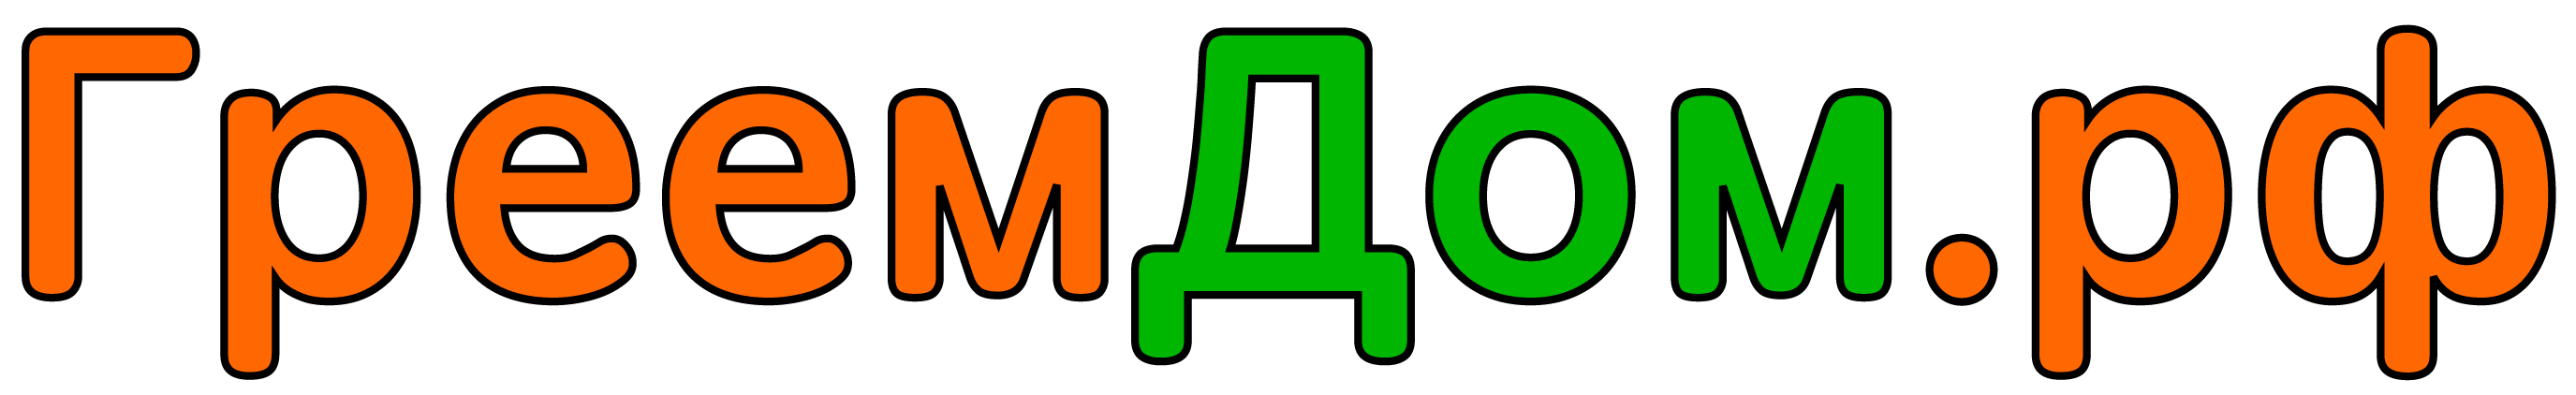 Логотип Greemdom